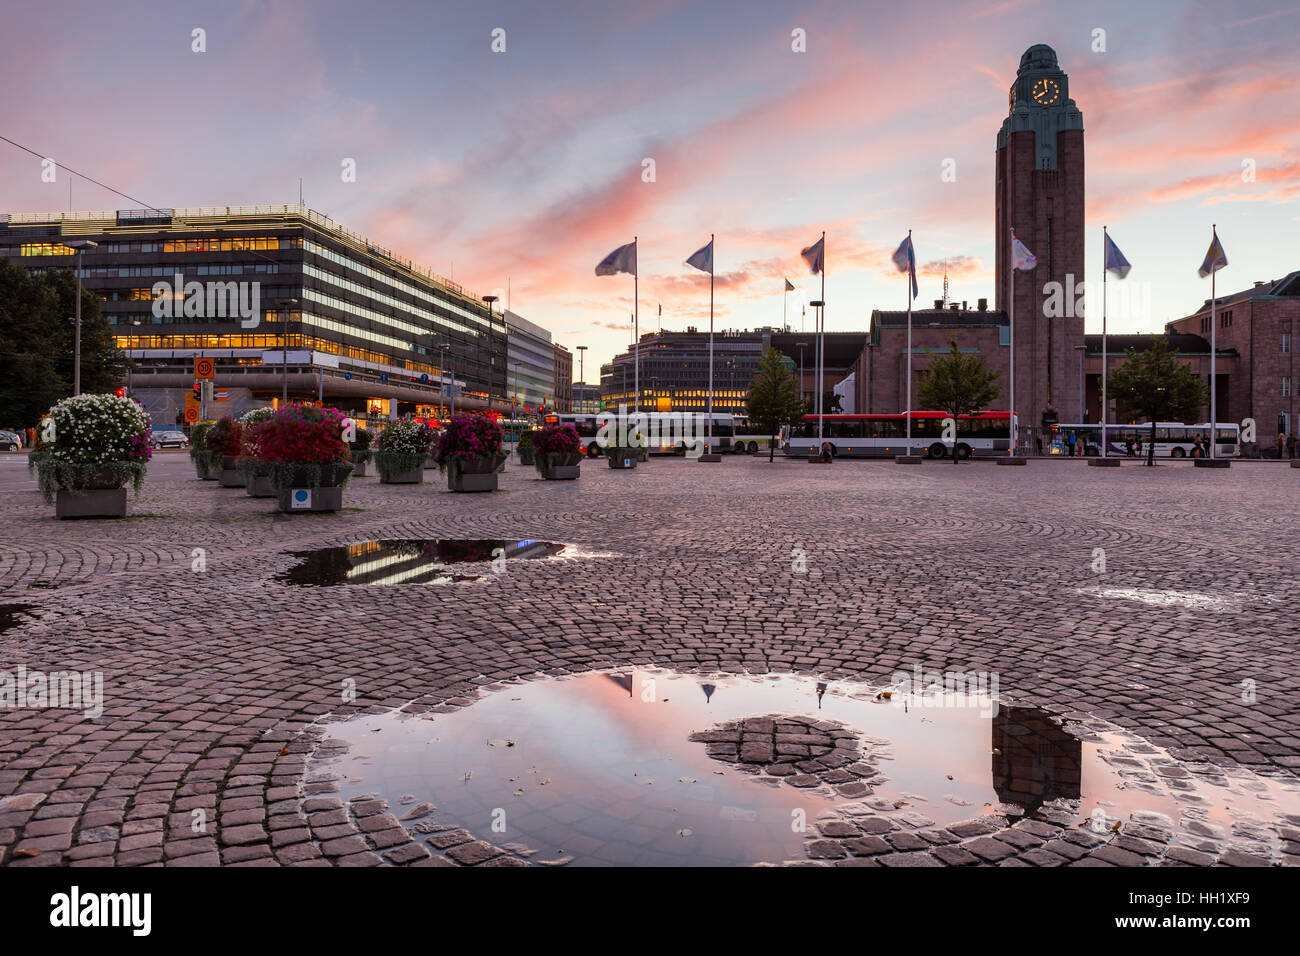 La gare centrale d'Helsinki est un monument largement reconnu en partie centrale de Kluuvi, Helsinki, Finlande. Banque D'Images